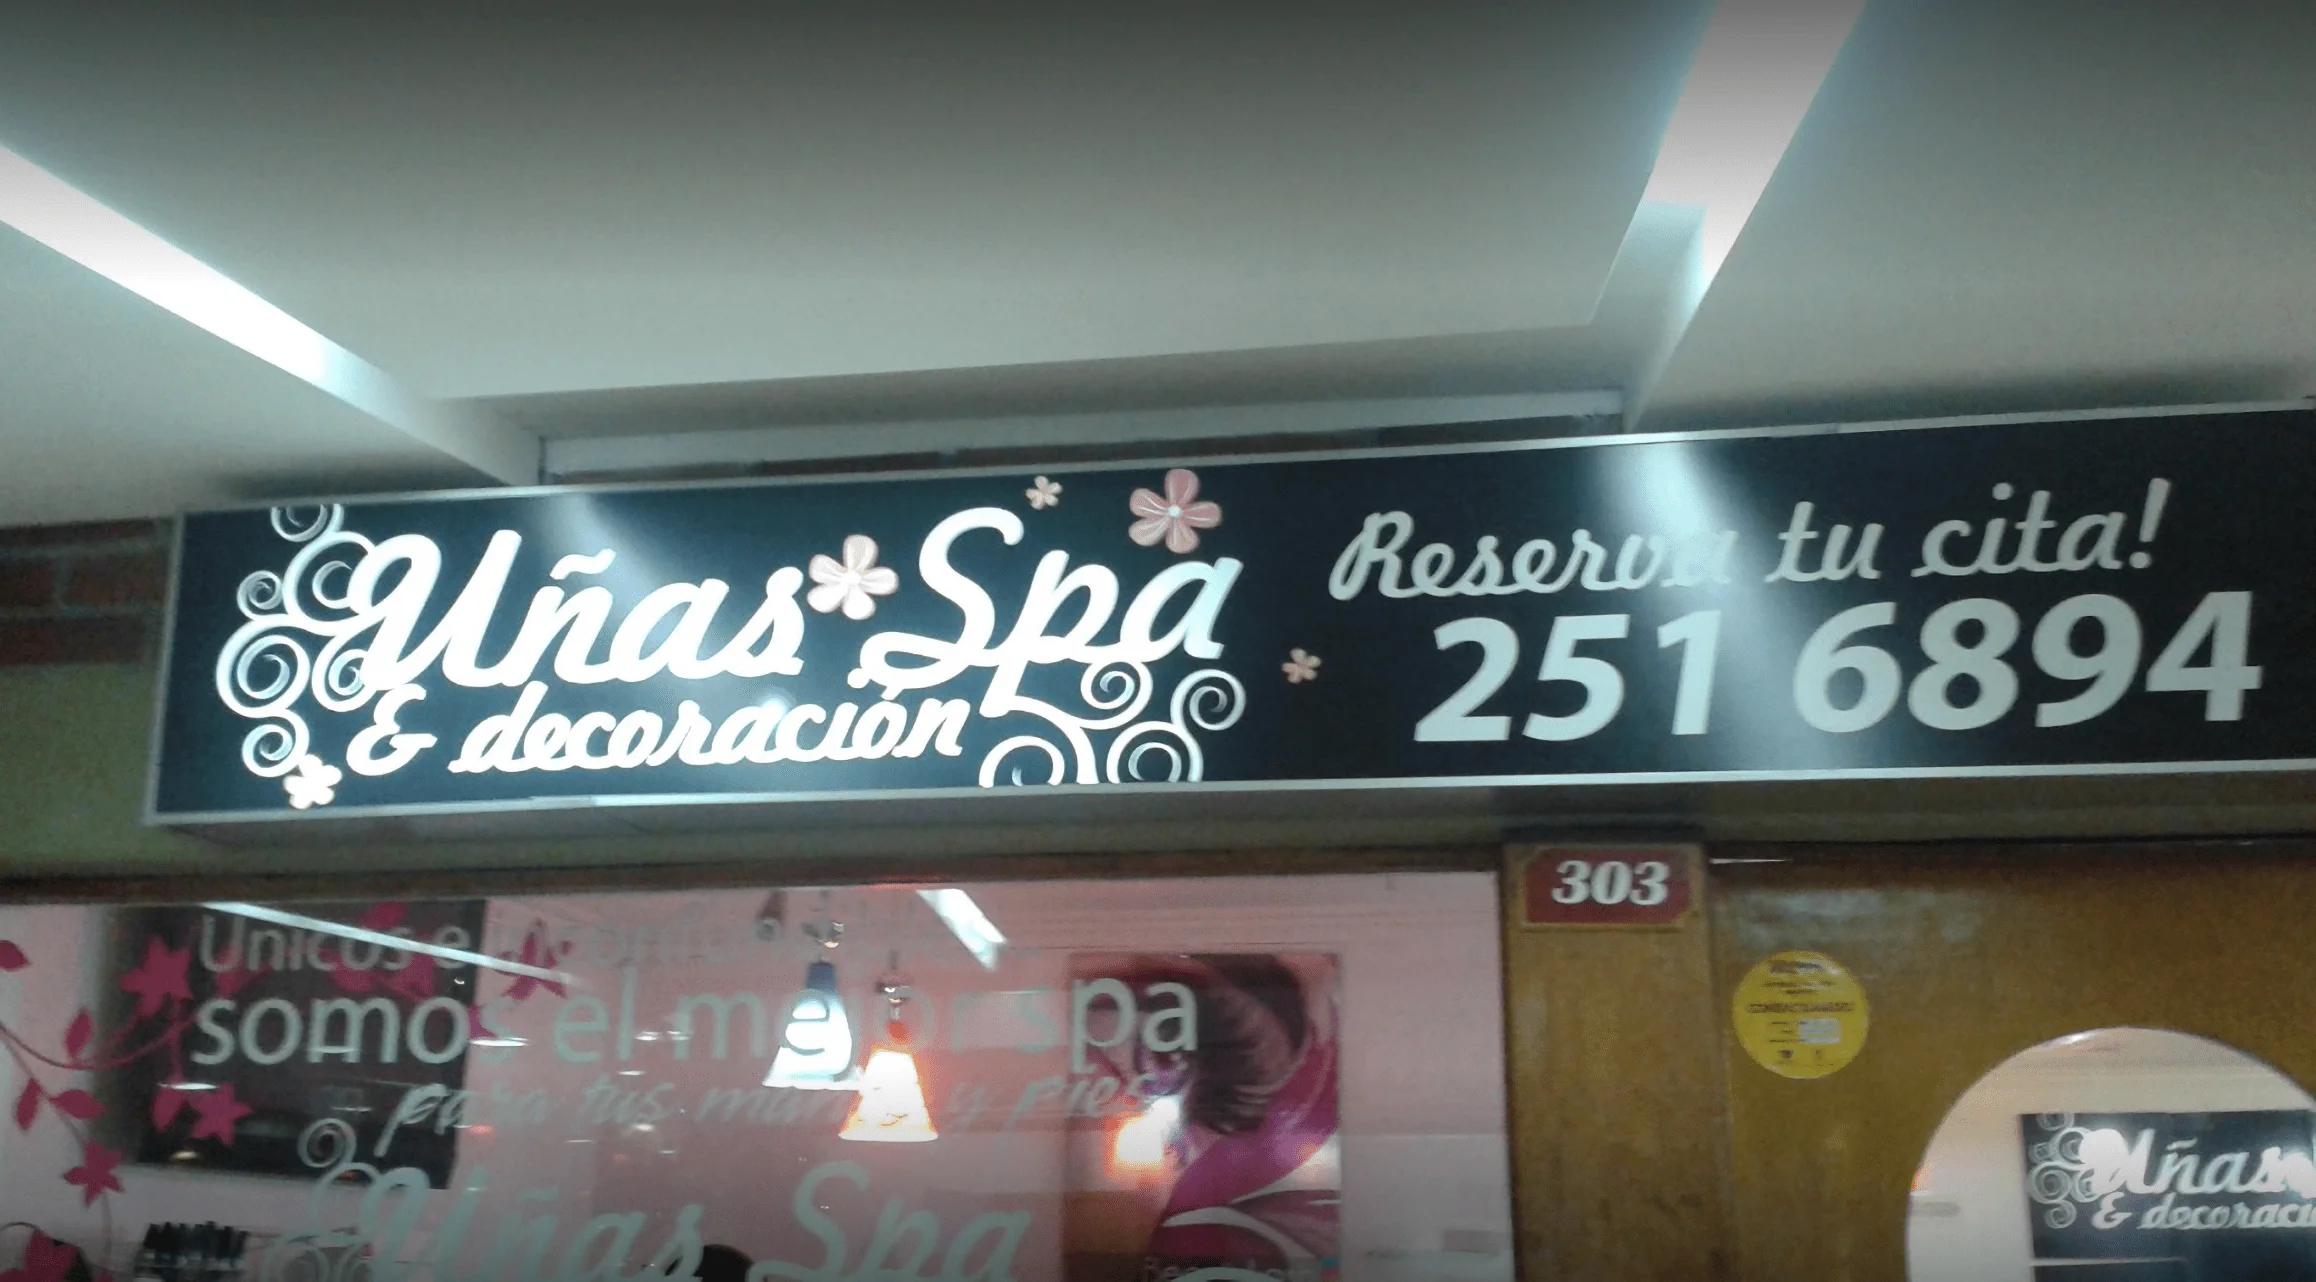 Spa-unas-spa-decoracion-5899